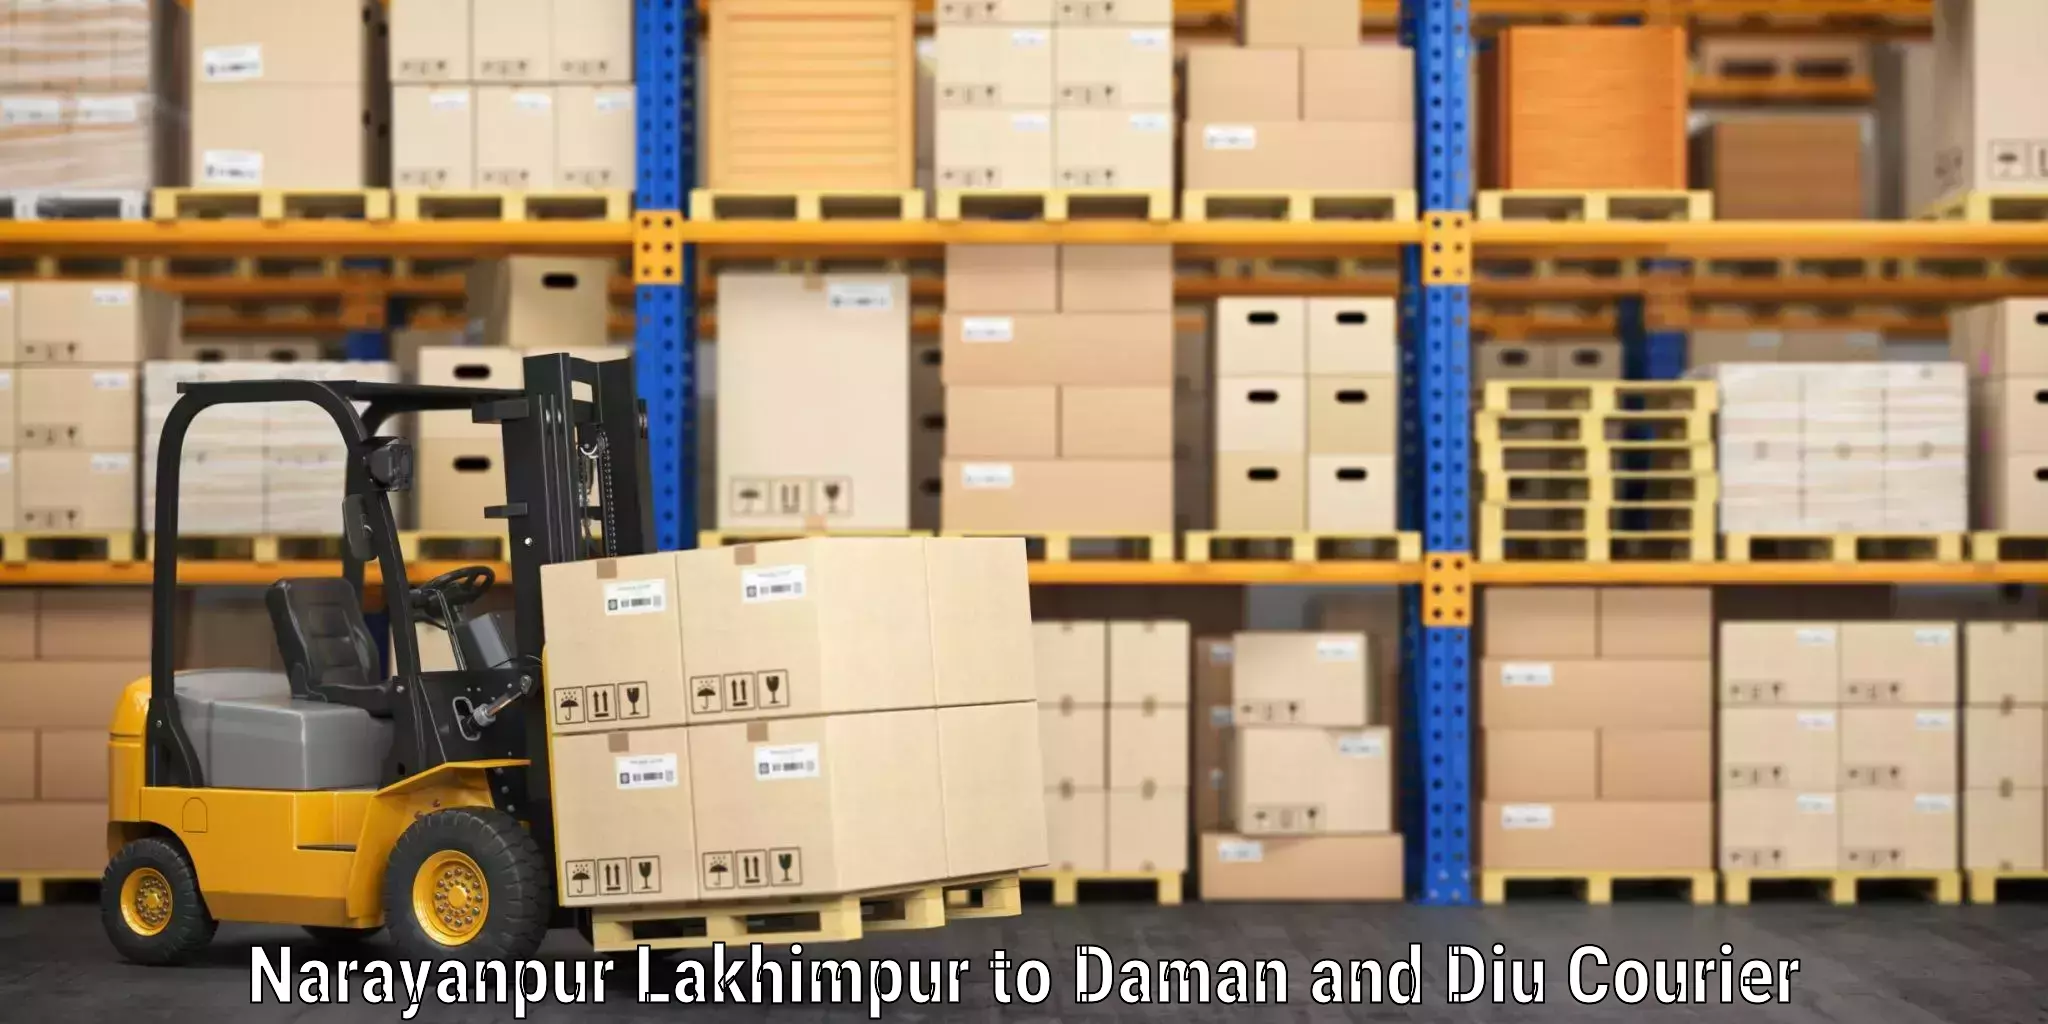 Luggage transport tips Narayanpur Lakhimpur to Daman